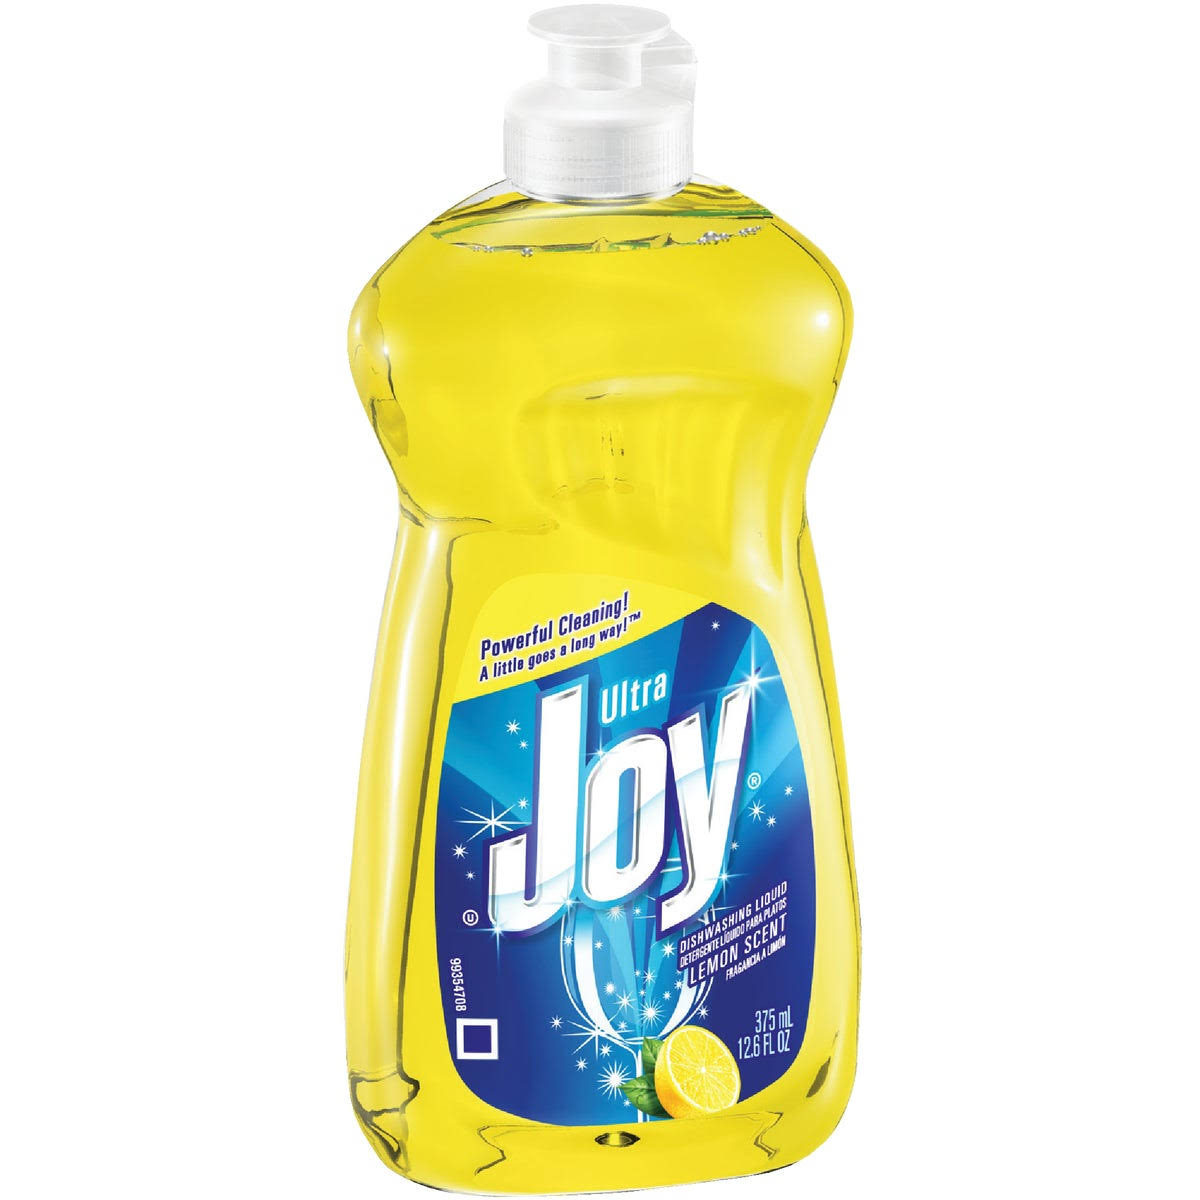 Joy Ultra Dishwashing Liquid - Lemon Scent, 12.6oz